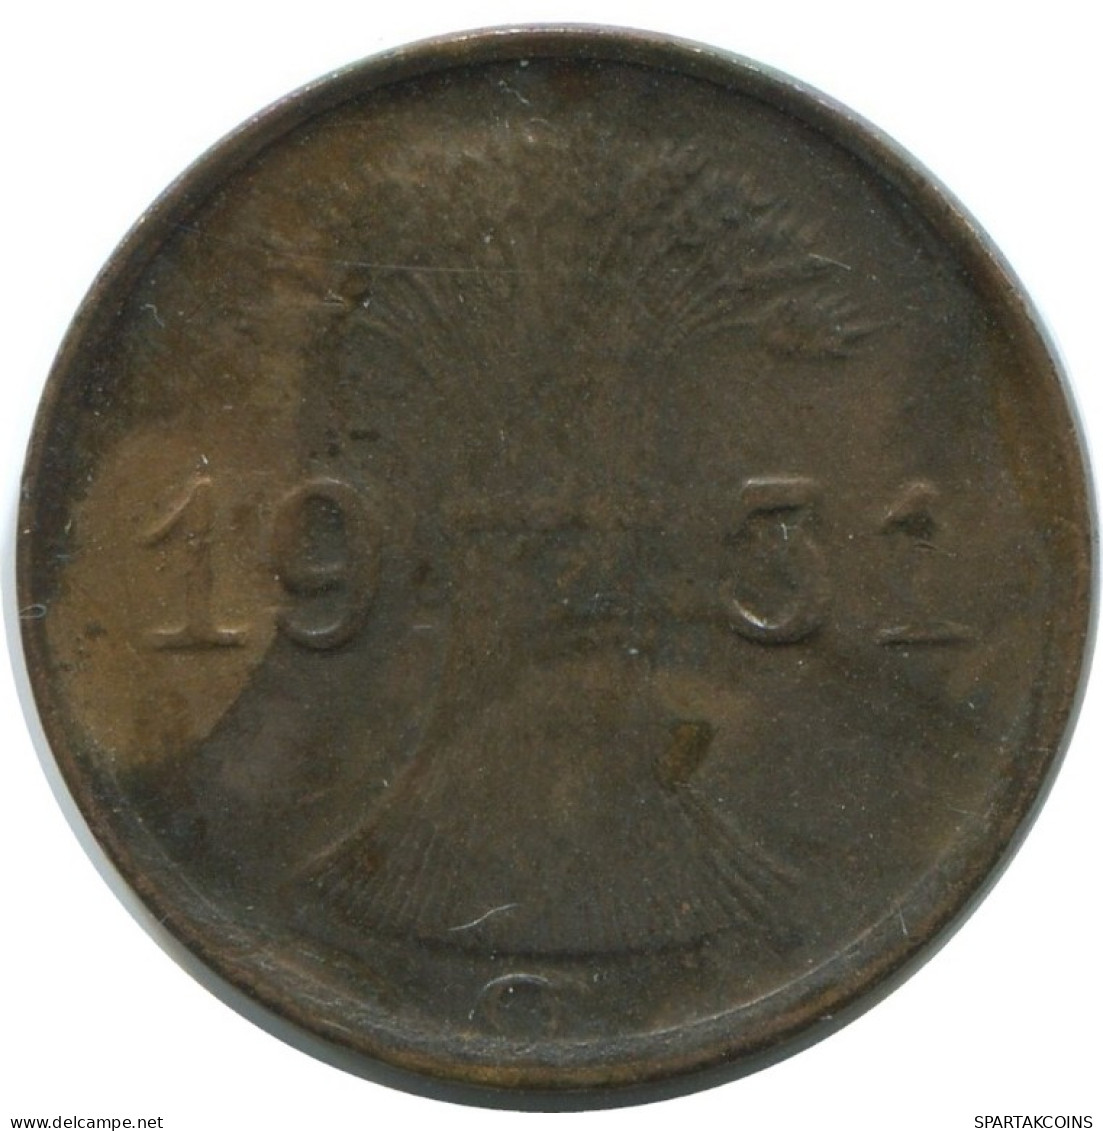 1 REICHSPFENNIG 1931 G ALEMANIA Moneda GERMANY #AE221.E.A - 1 Rentenpfennig & 1 Reichspfennig